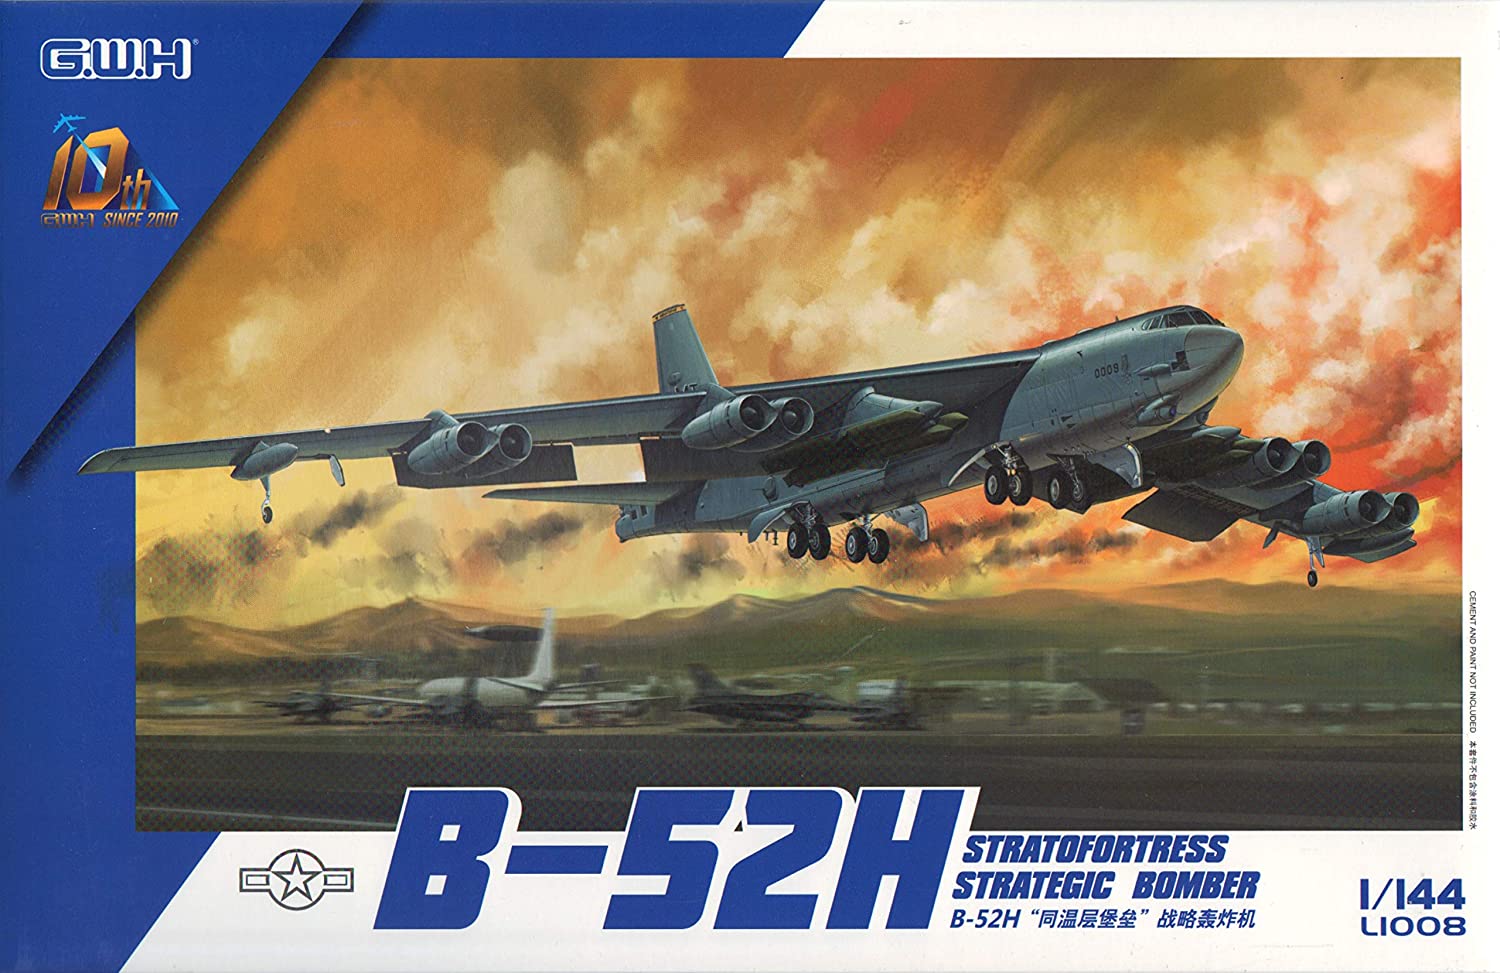 Boeing B-52H Strategic Bomber